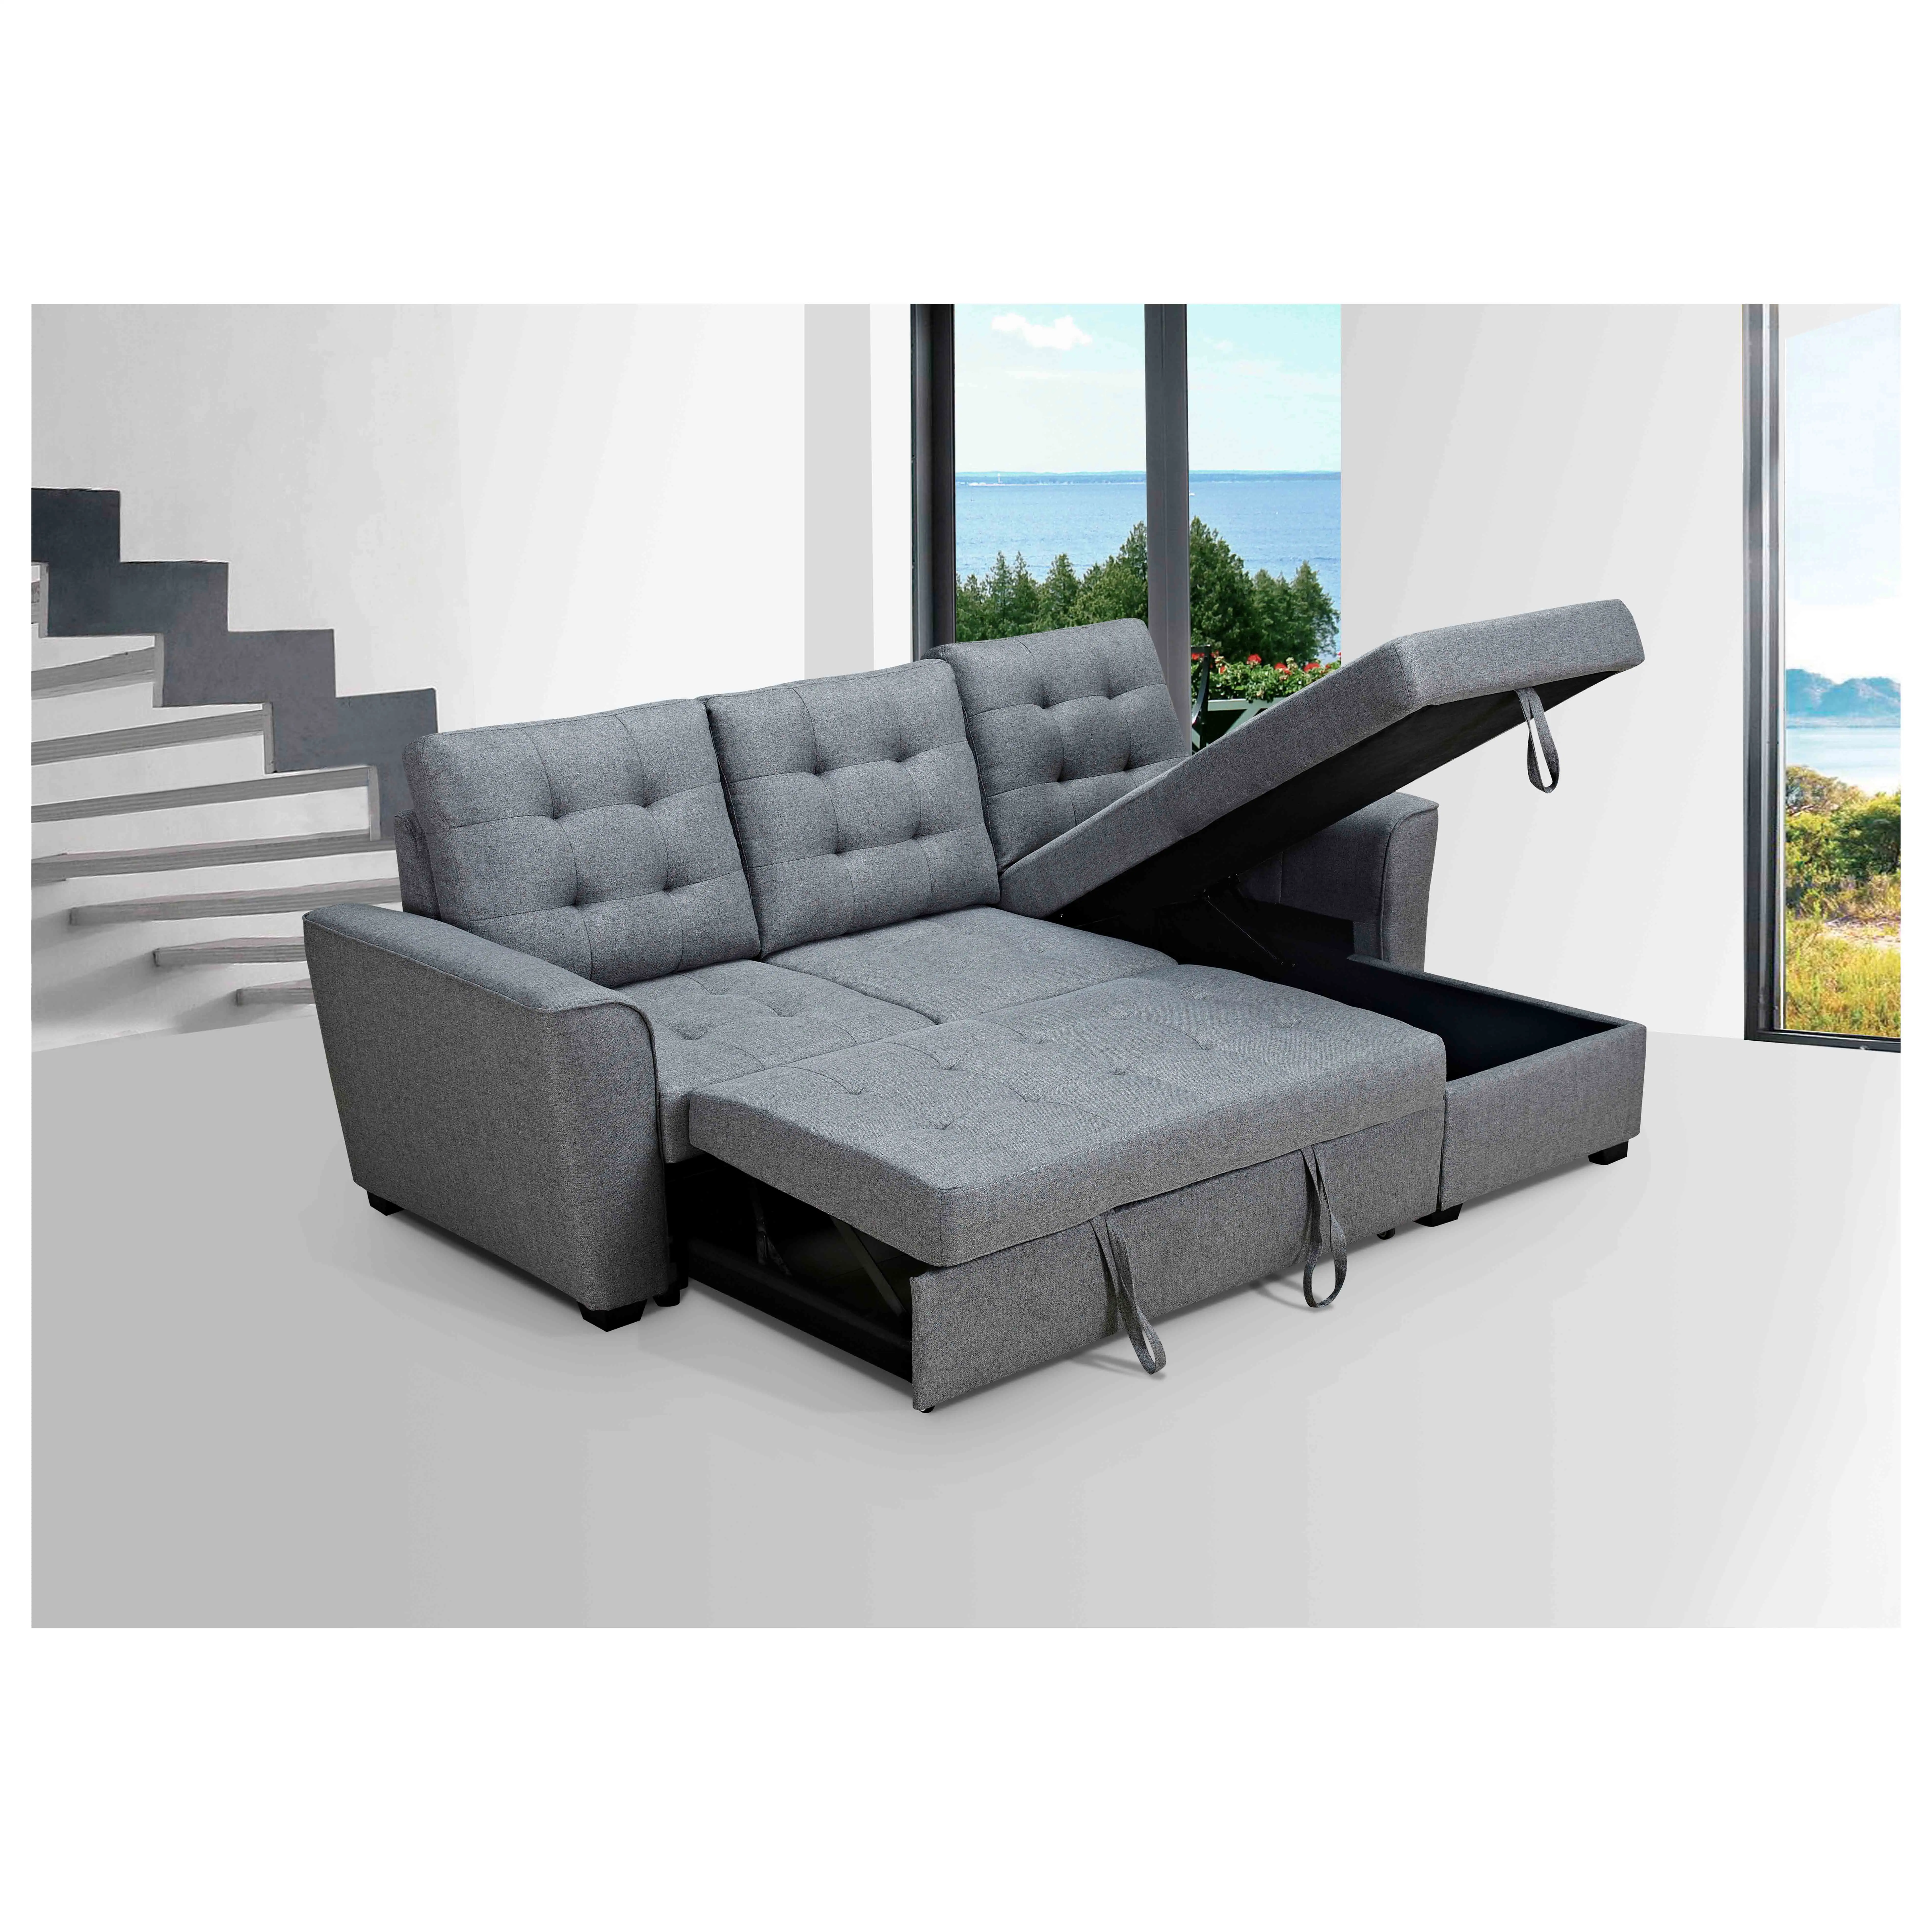 19956 ODM OEM Furnitur Mewah Ruang Duduk Sofa Italia Ruang Tamu Tempat Tidur Sofa Set Desain